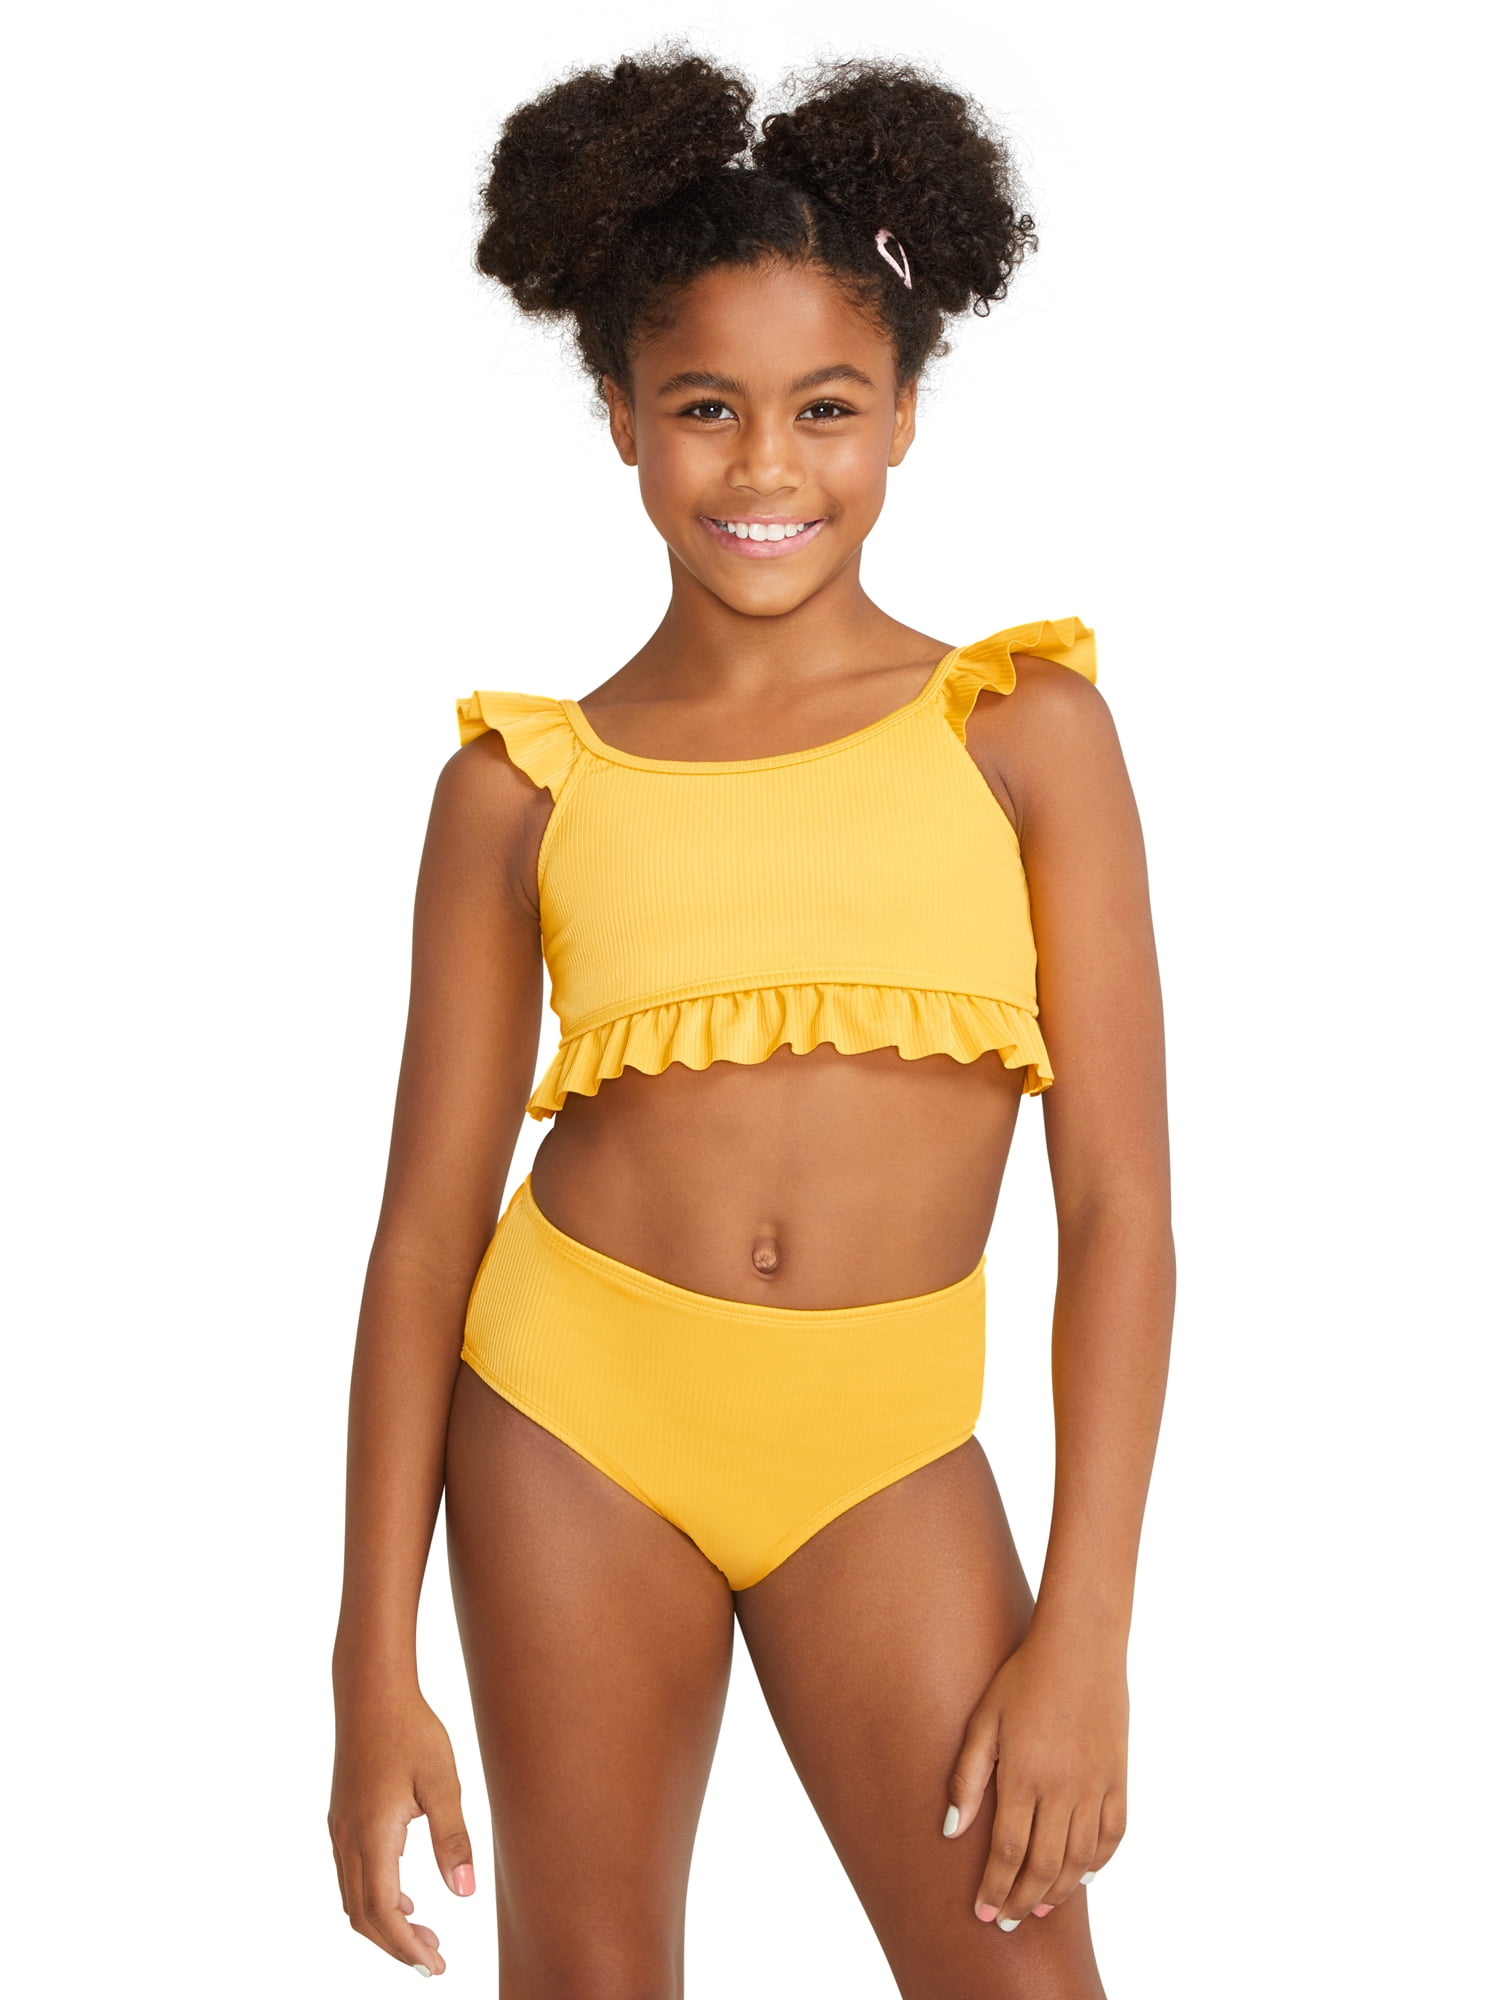 Jadeo Izar proteína Justice Girls 2 Piece Recycled Poly Rib Ruffle Swimsuit Bikini, Sizes 5-18  - Walmart.com